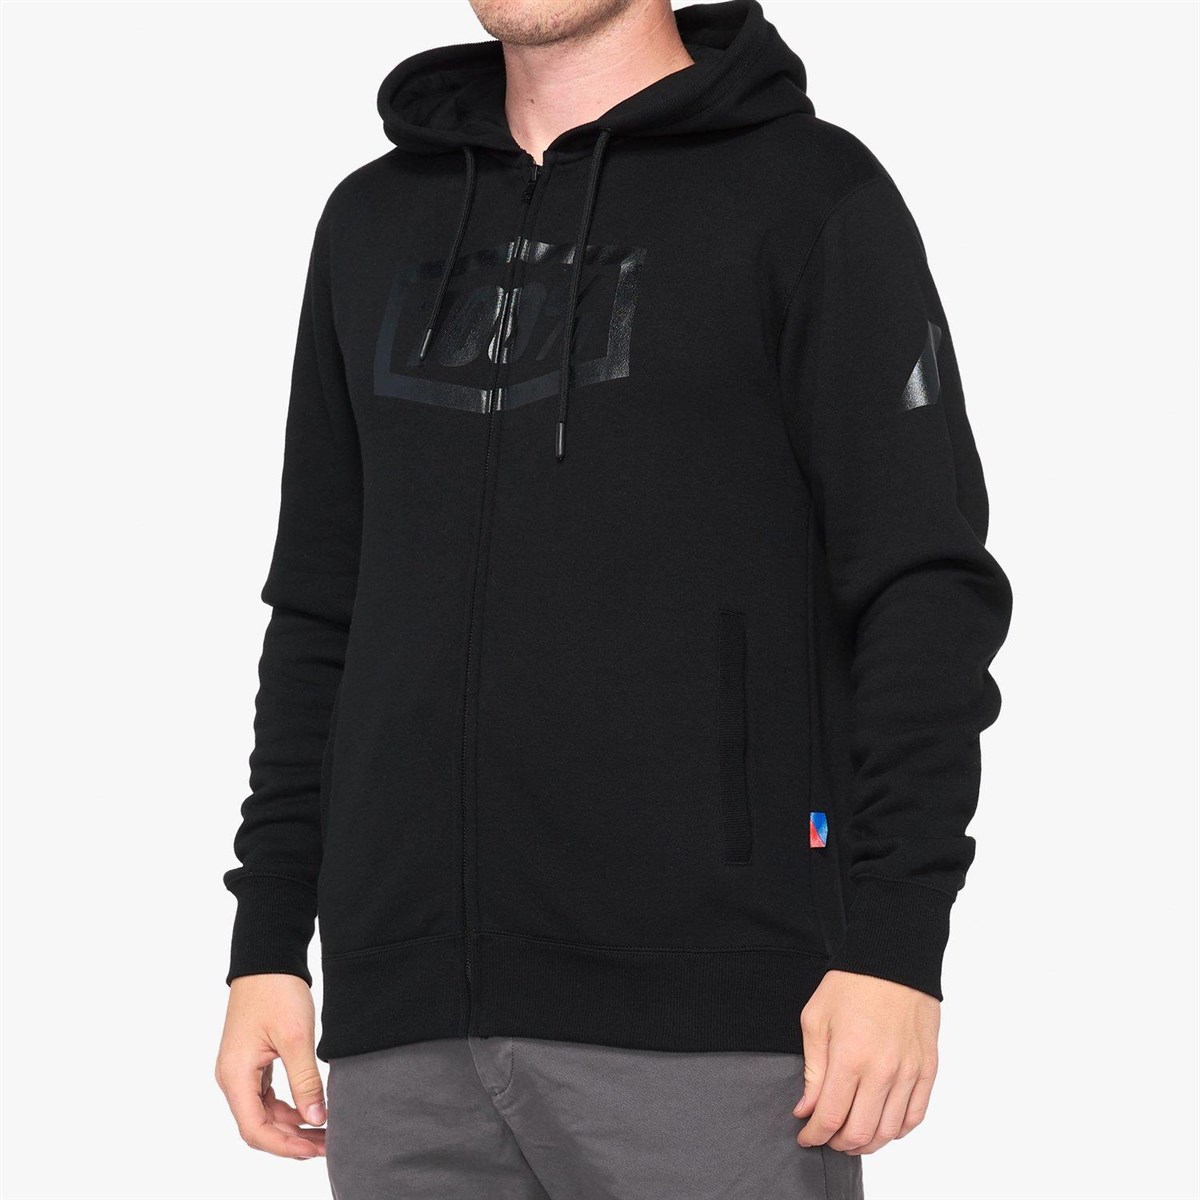 100% Syndicate Hooded Zip Sweatshirt product image